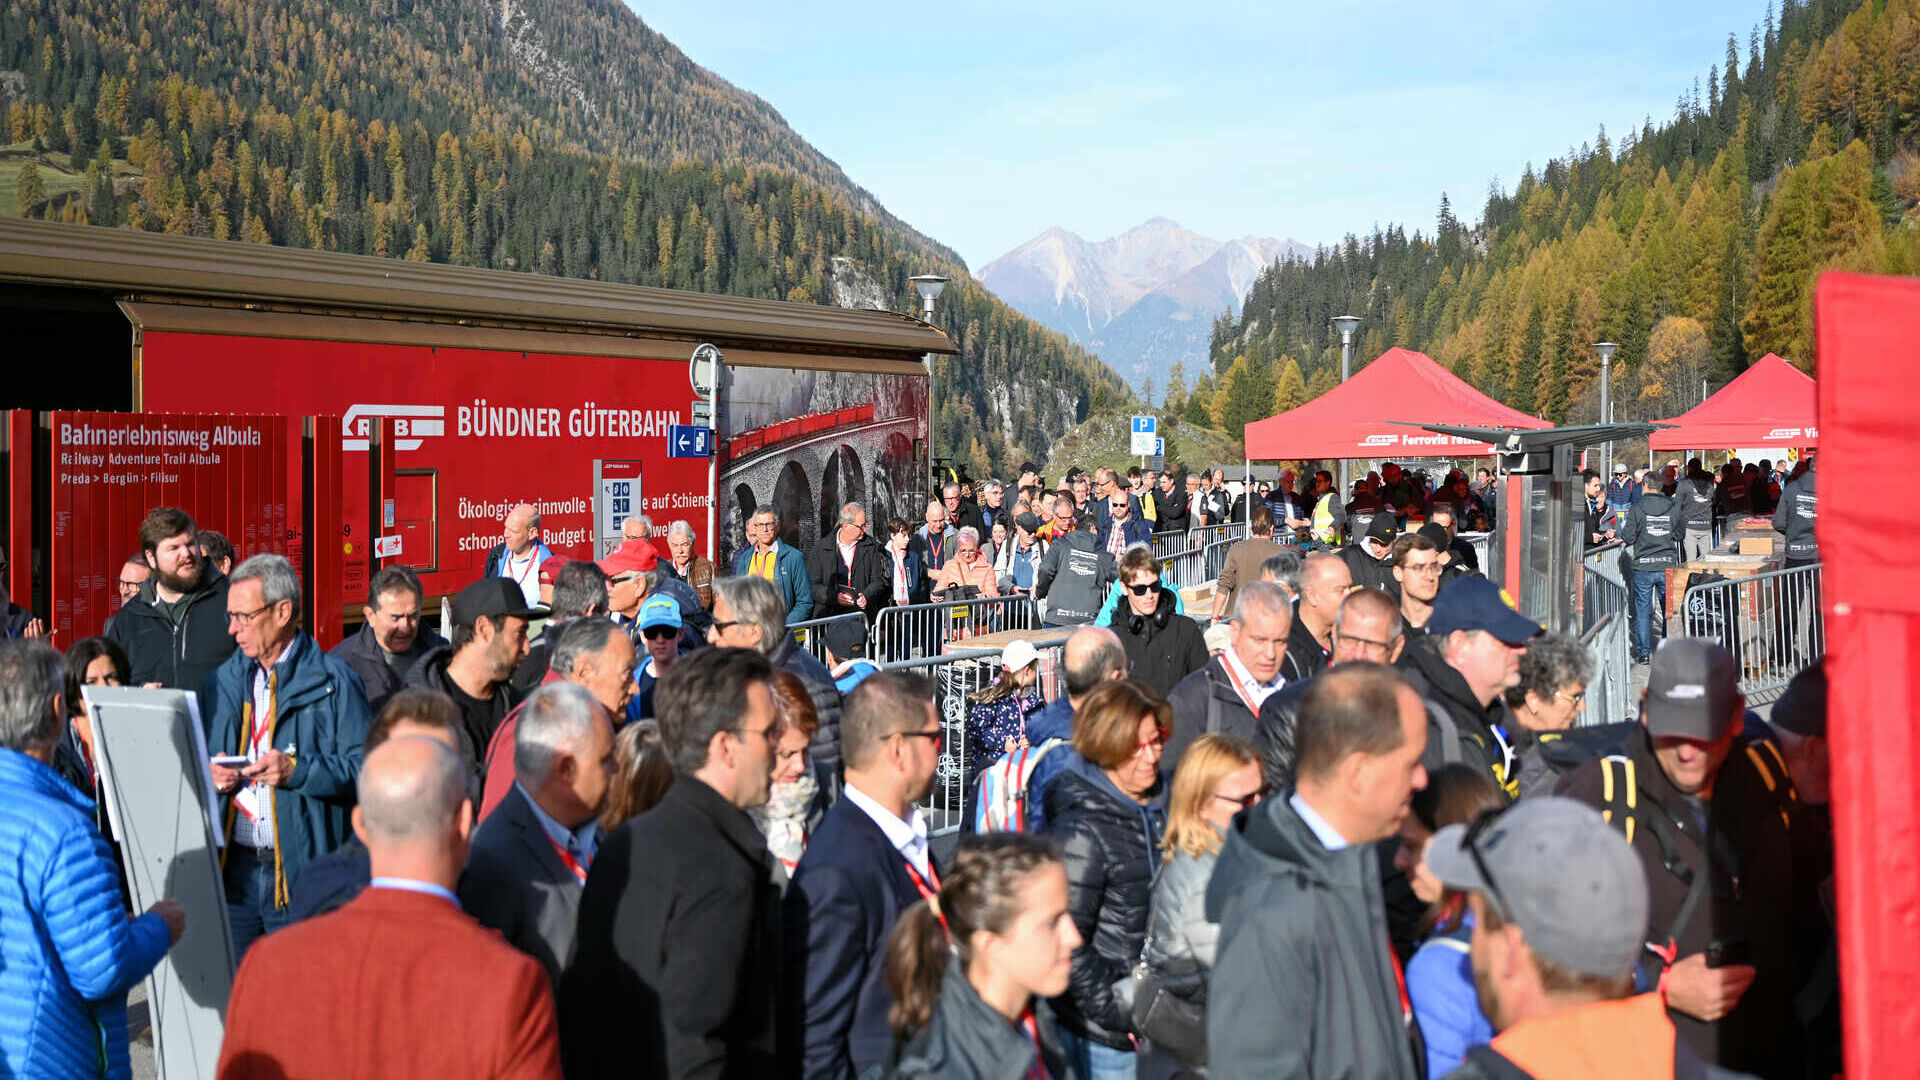 Activități pentru publicul Graubünden în timpul recordului pentru cel mai lung tren cu ecartament îngust din lume al Căilor Ferate Retice